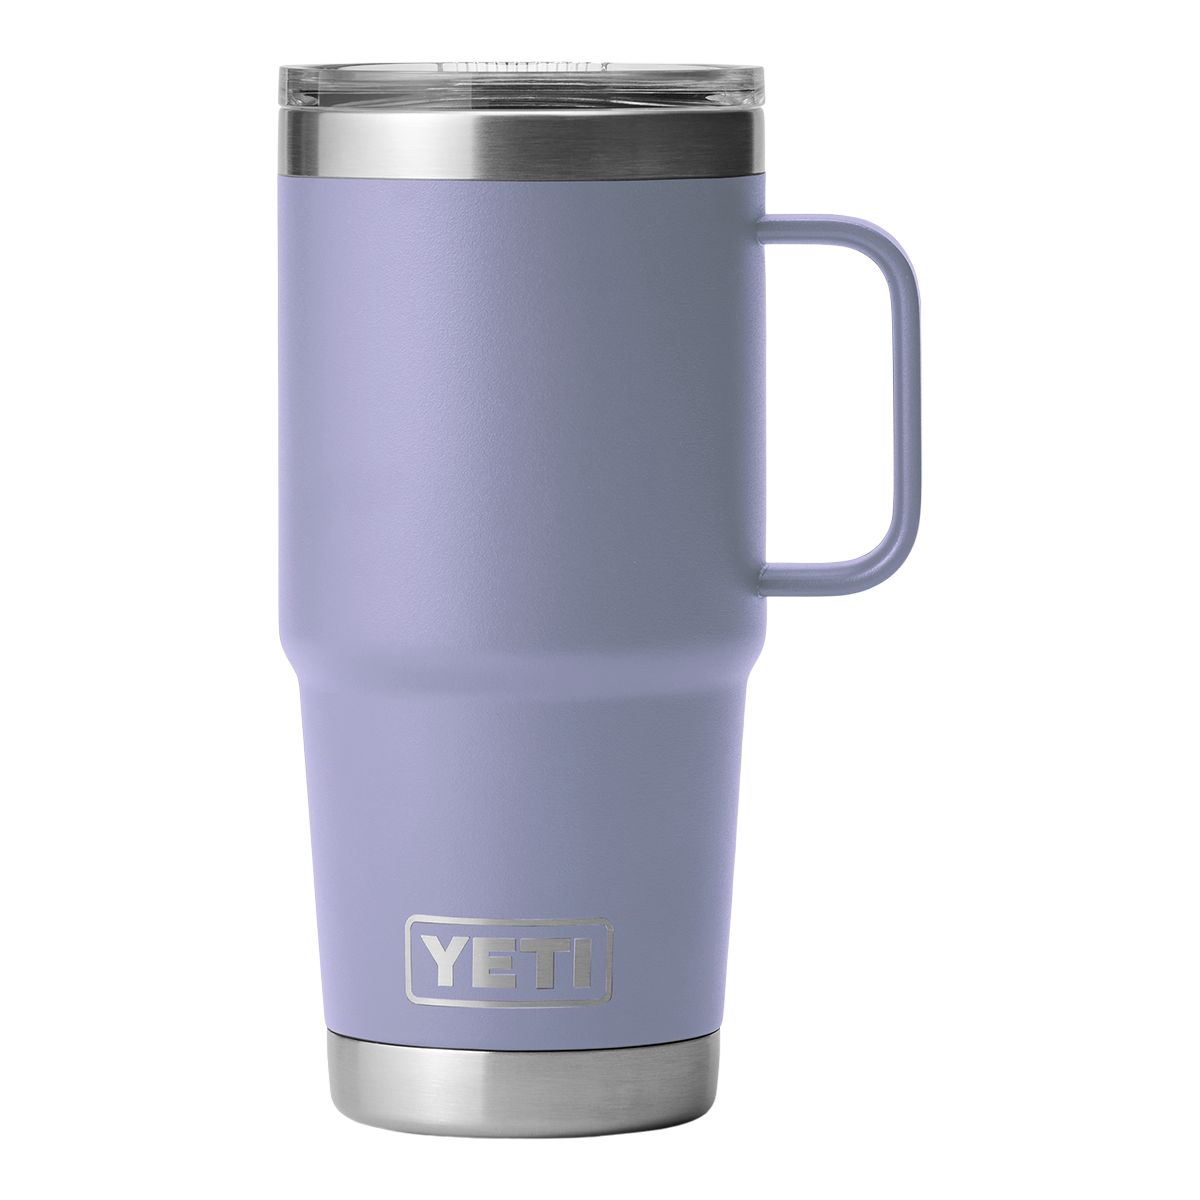 Yeti Rambler oz Travel Mug